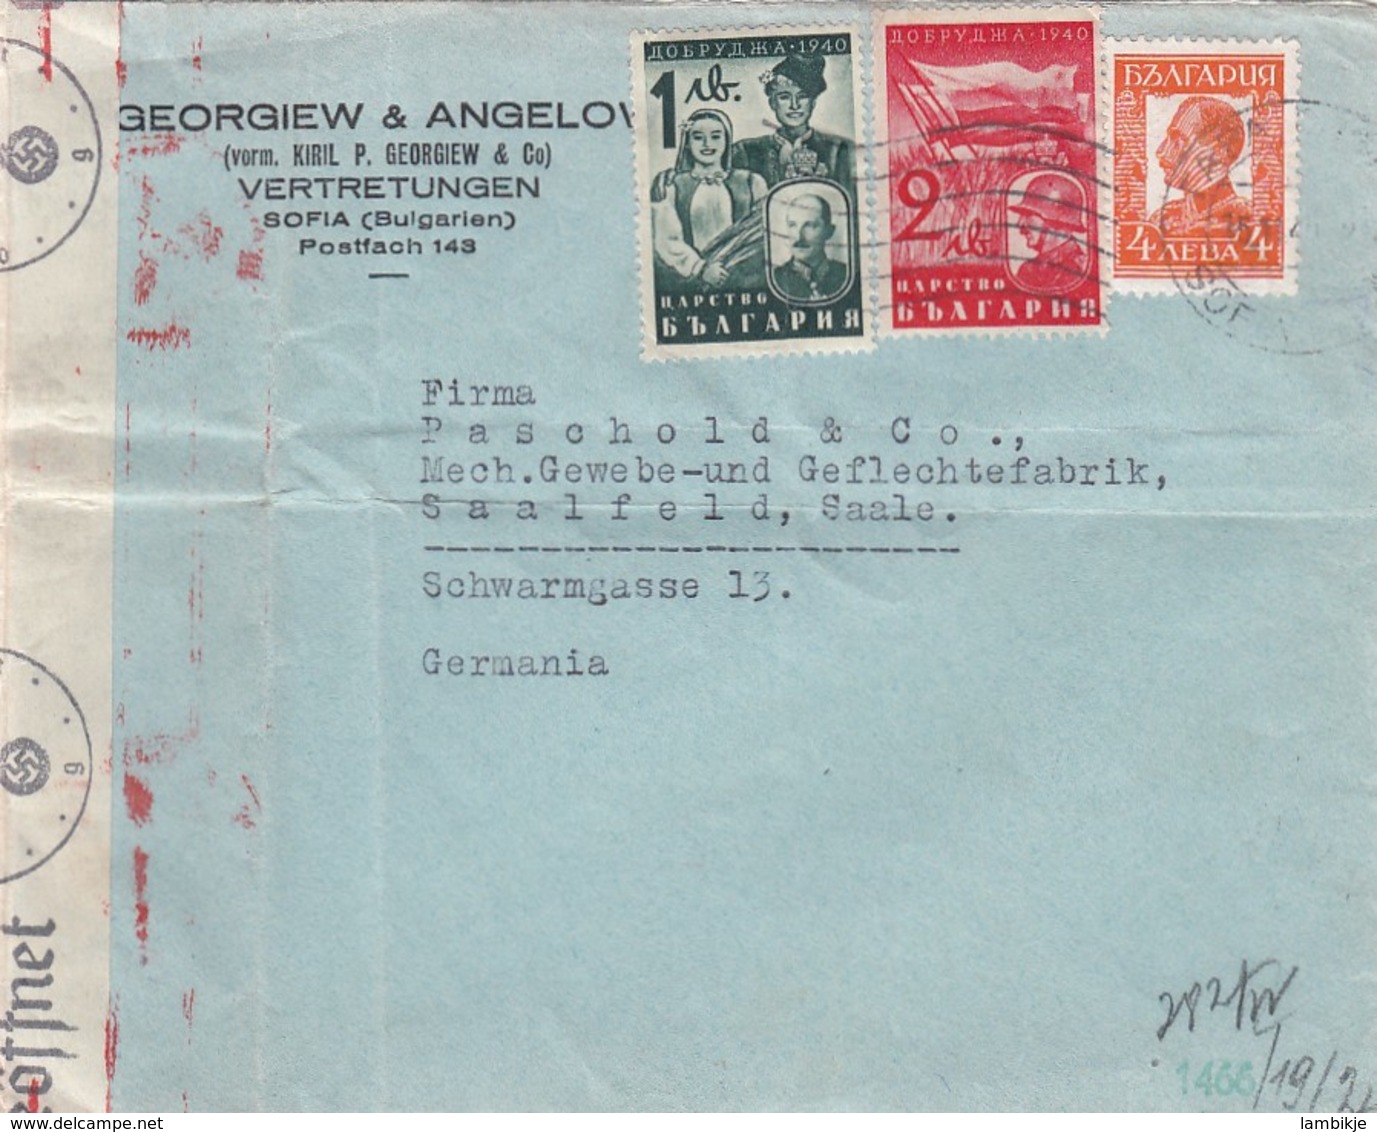 Bulgary Cover Censor Airmail 1940 - Briefe U. Dokumente